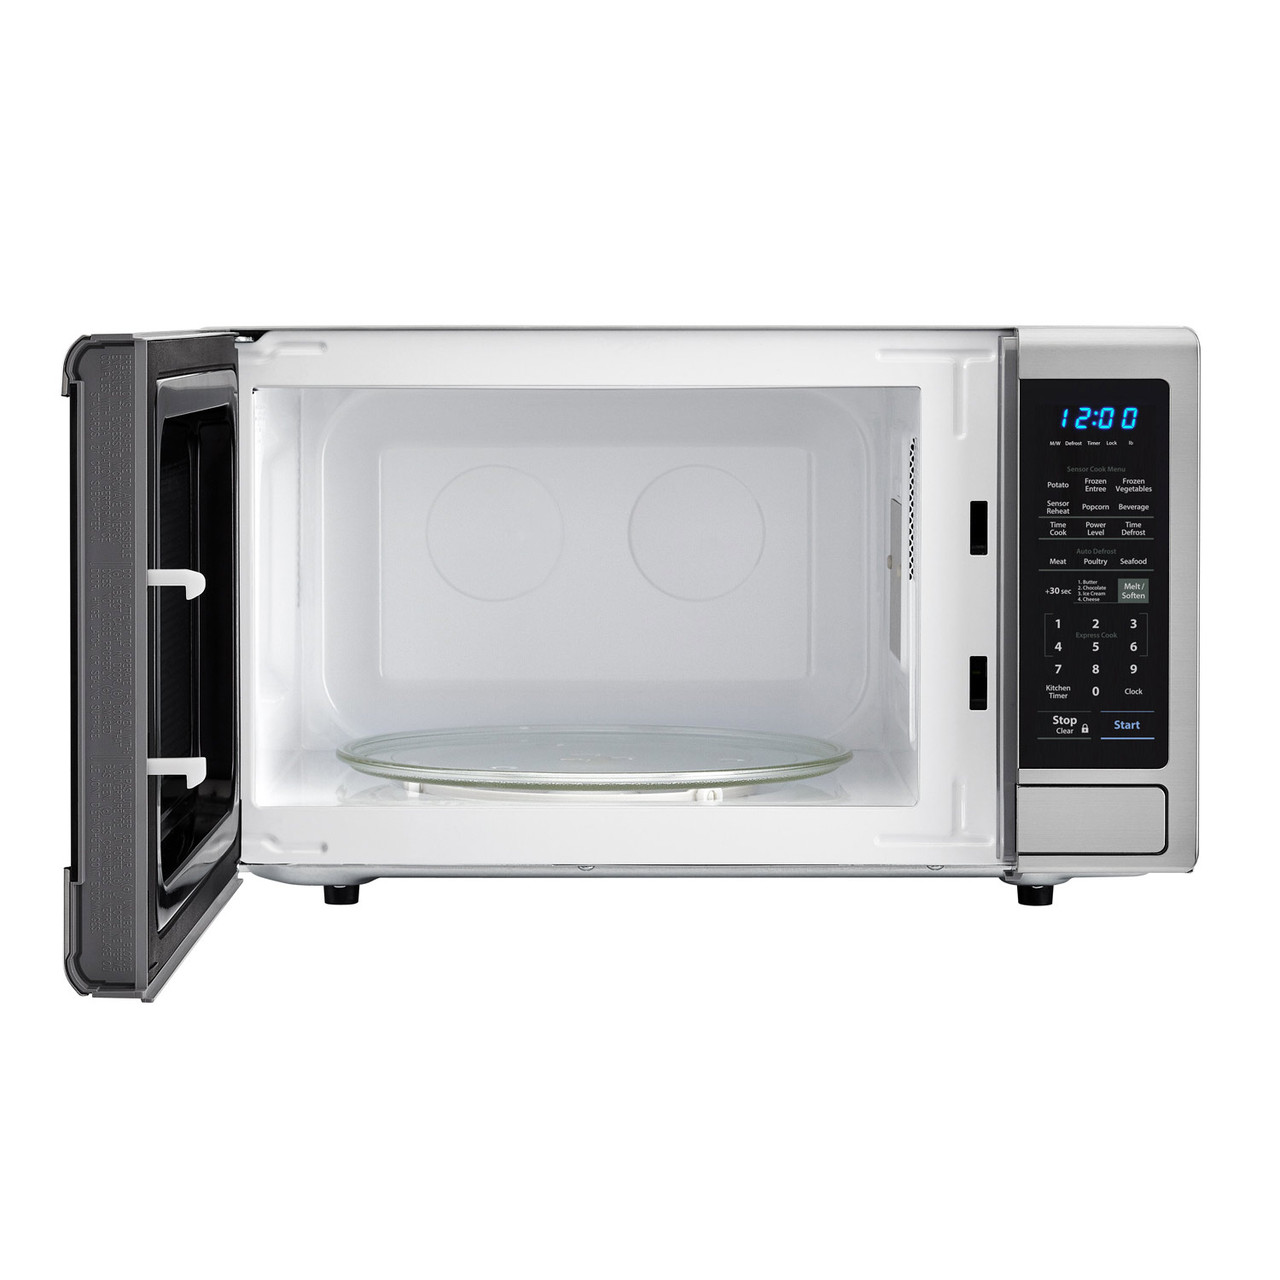 1.8 cu. ft. Sharp Stainless Steel Countertop Microwave (SMC1842CS) – front view with door open